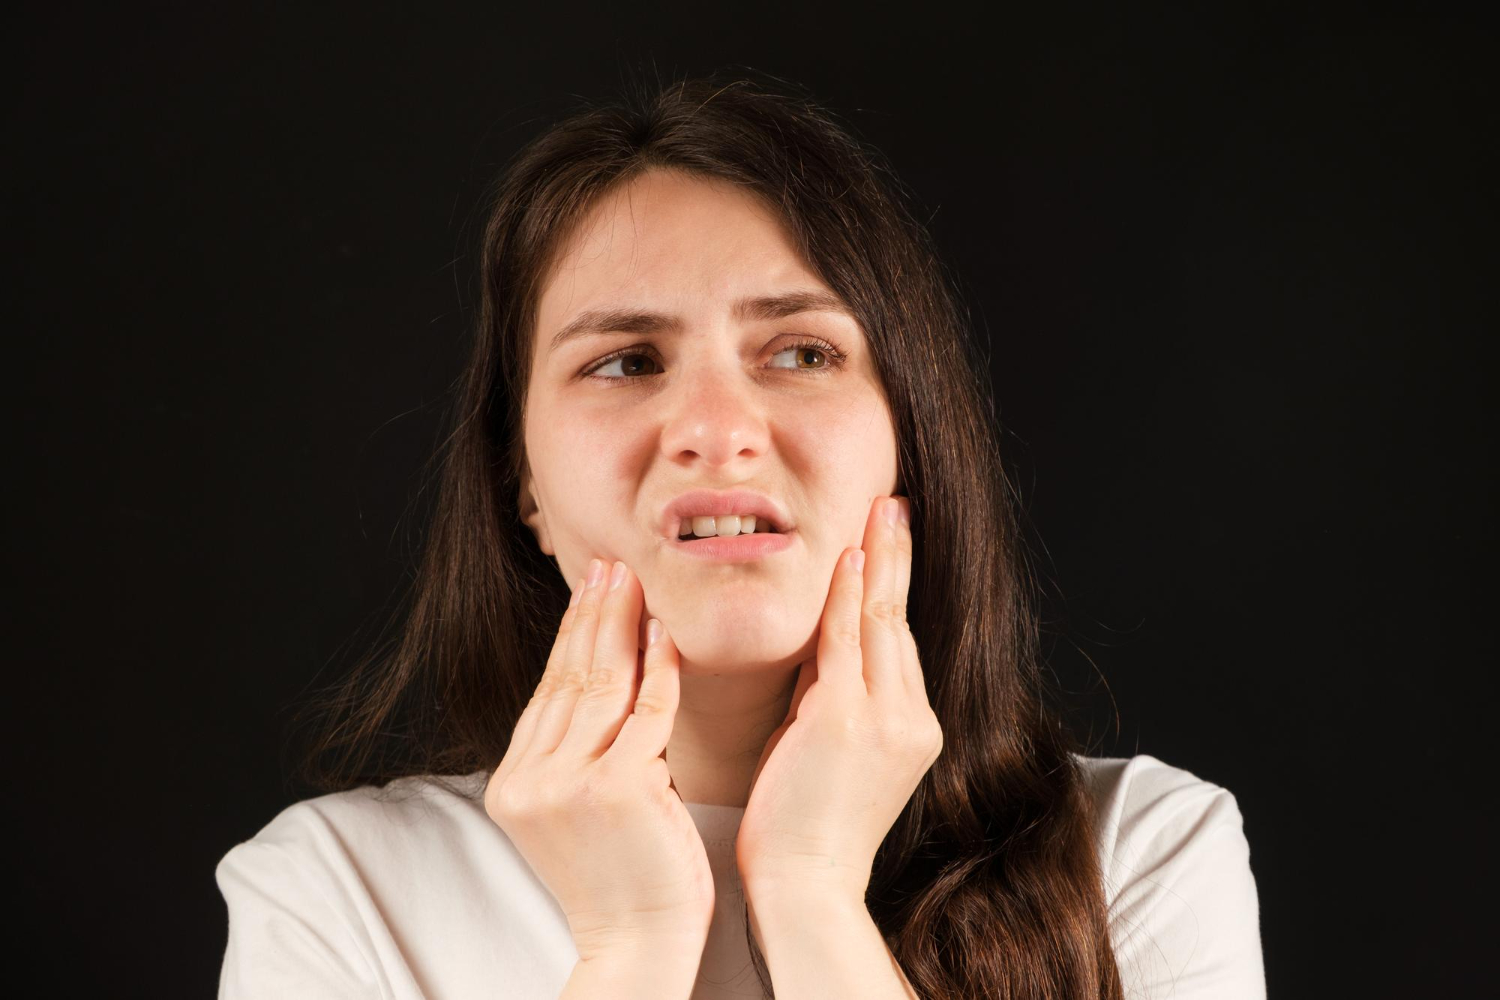 What Causes Temporomandibular Joint Disorder?